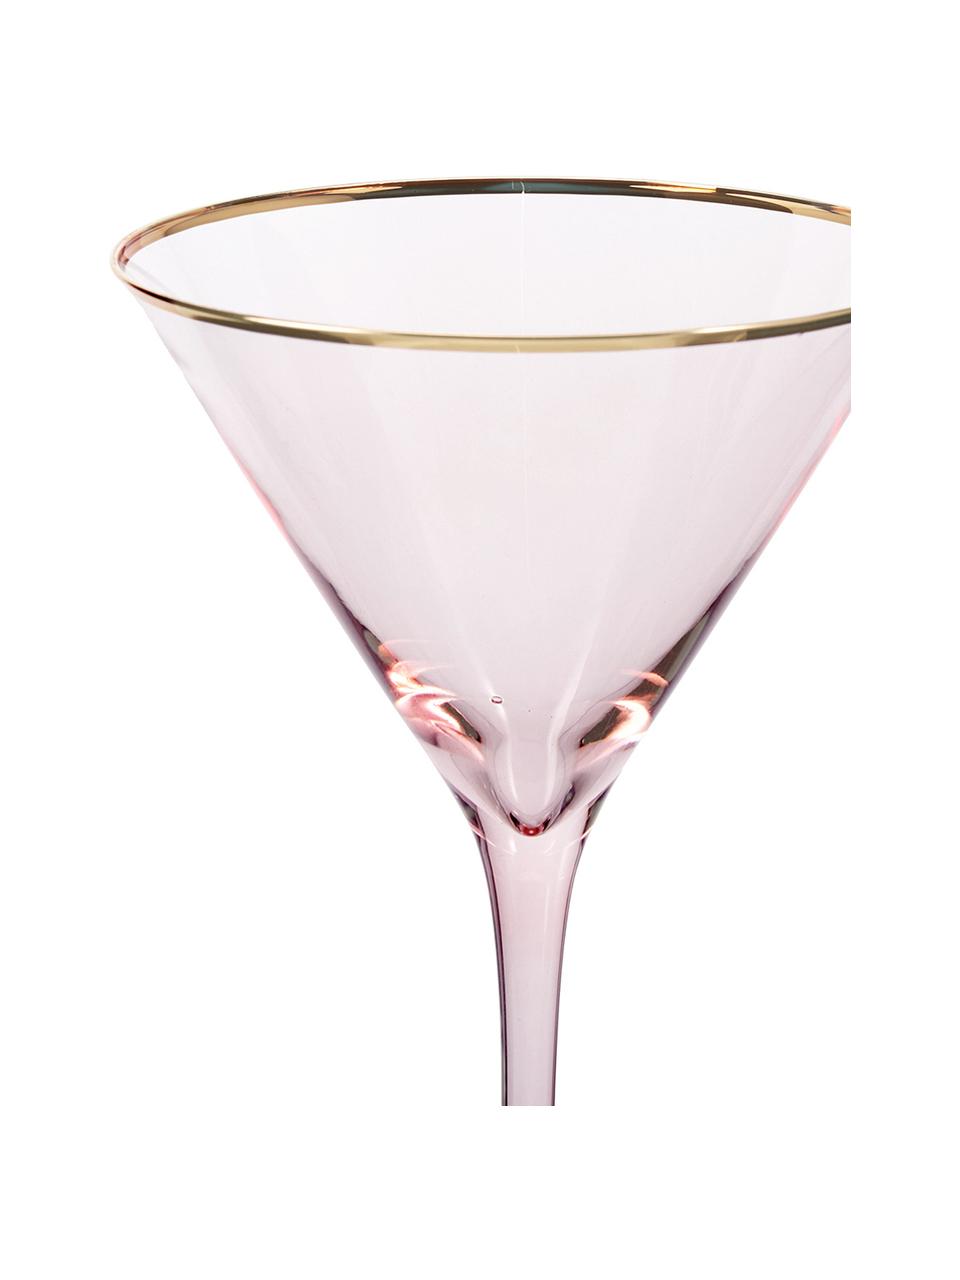 Martinigläser Chloe in Rosa mit Goldrand, 4 Stück, Glas, Pfirsich, Ø 12 x H 19 cm